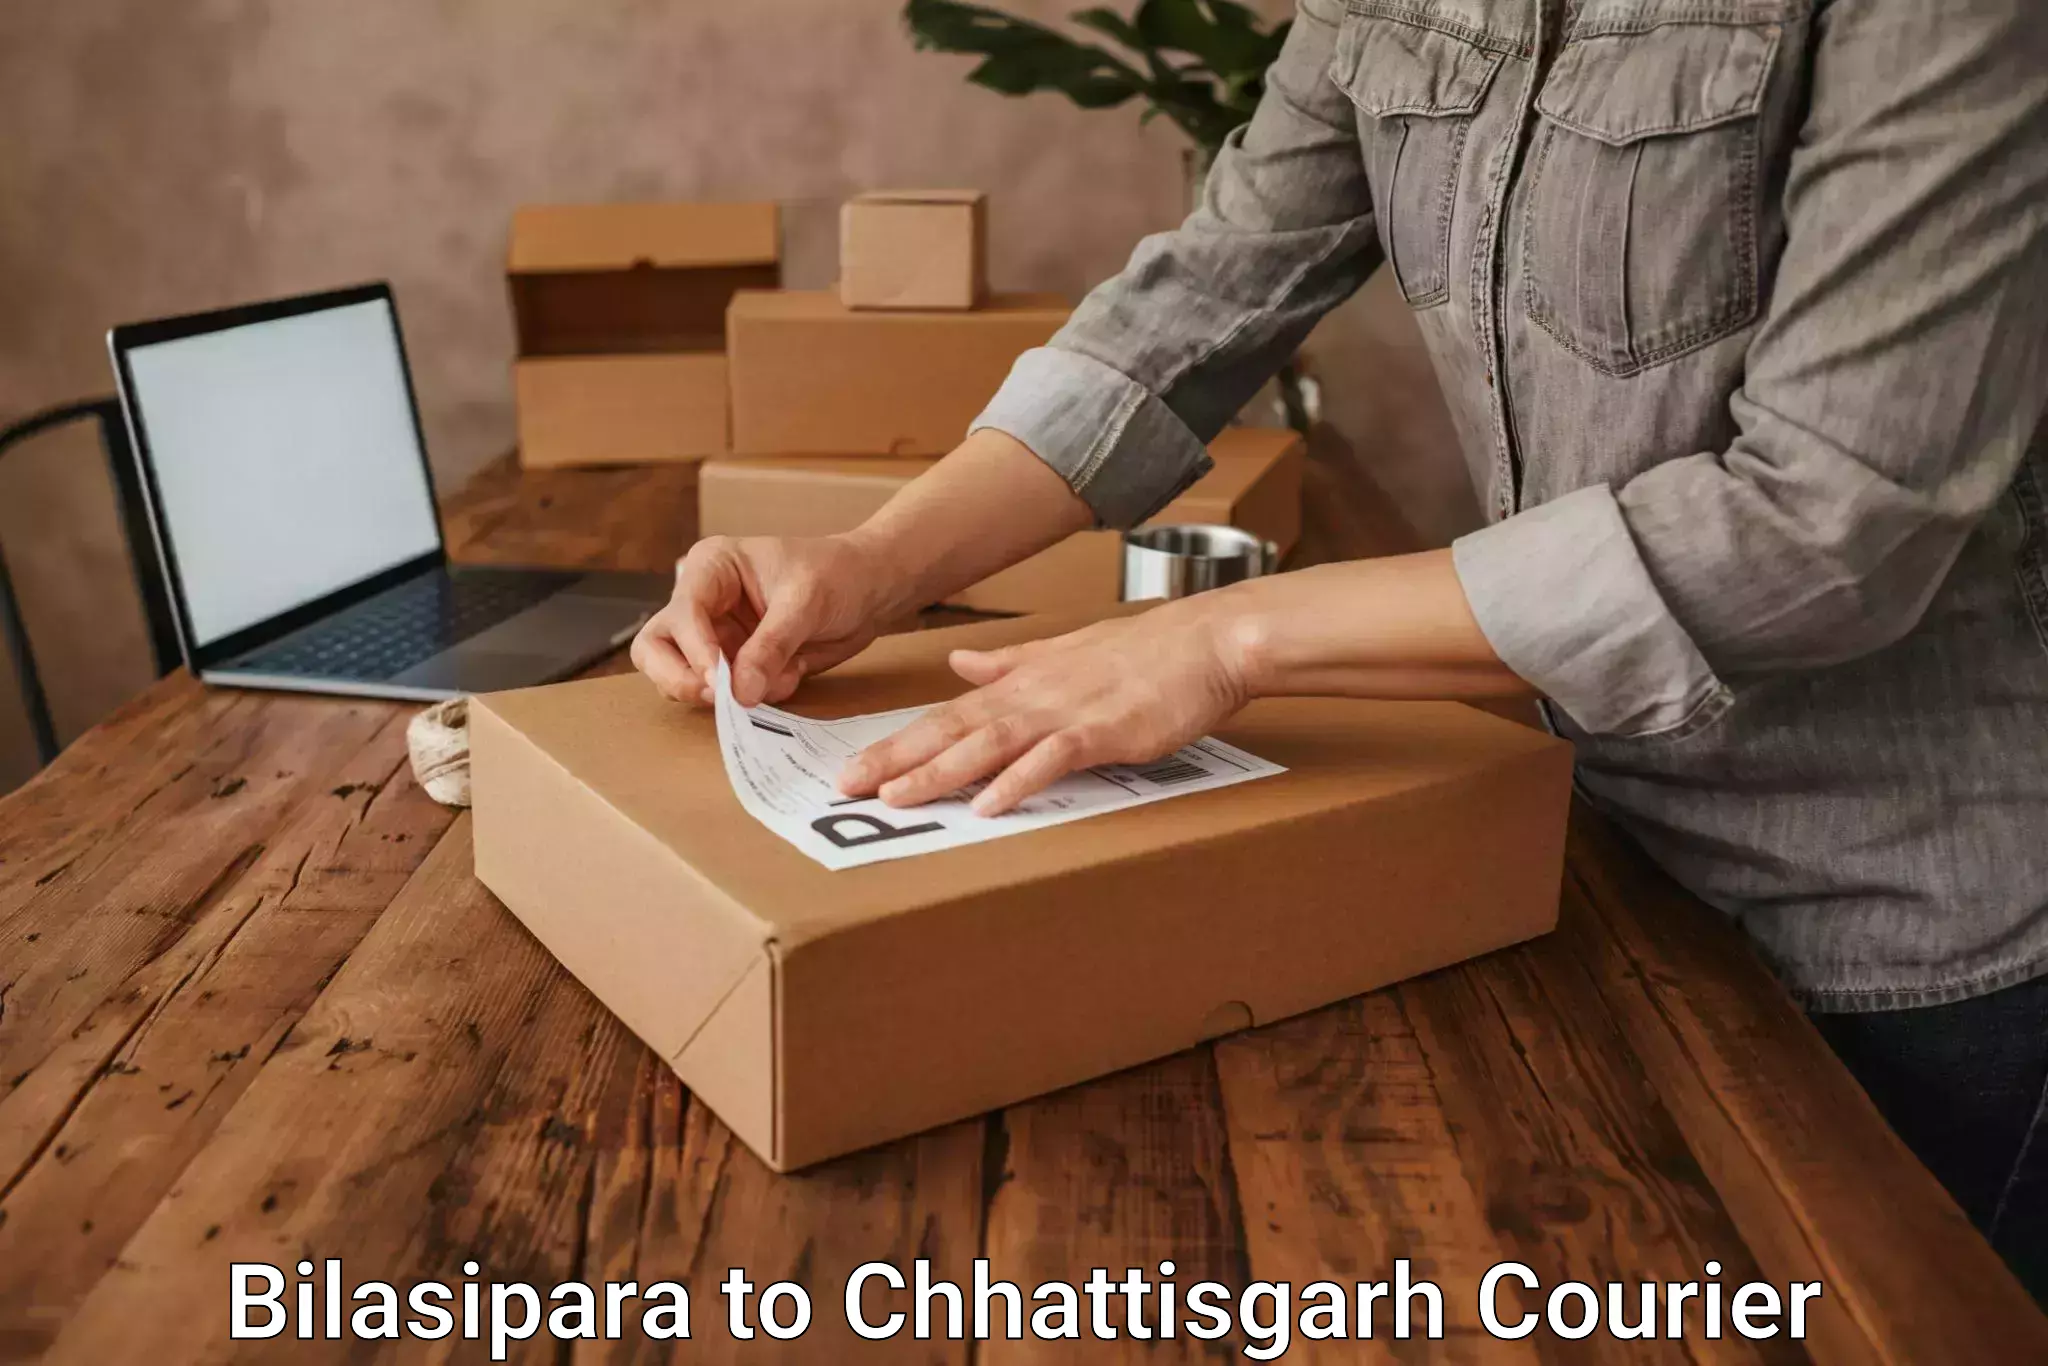 Multi-service courier options Bilasipara to Chhattisgarh